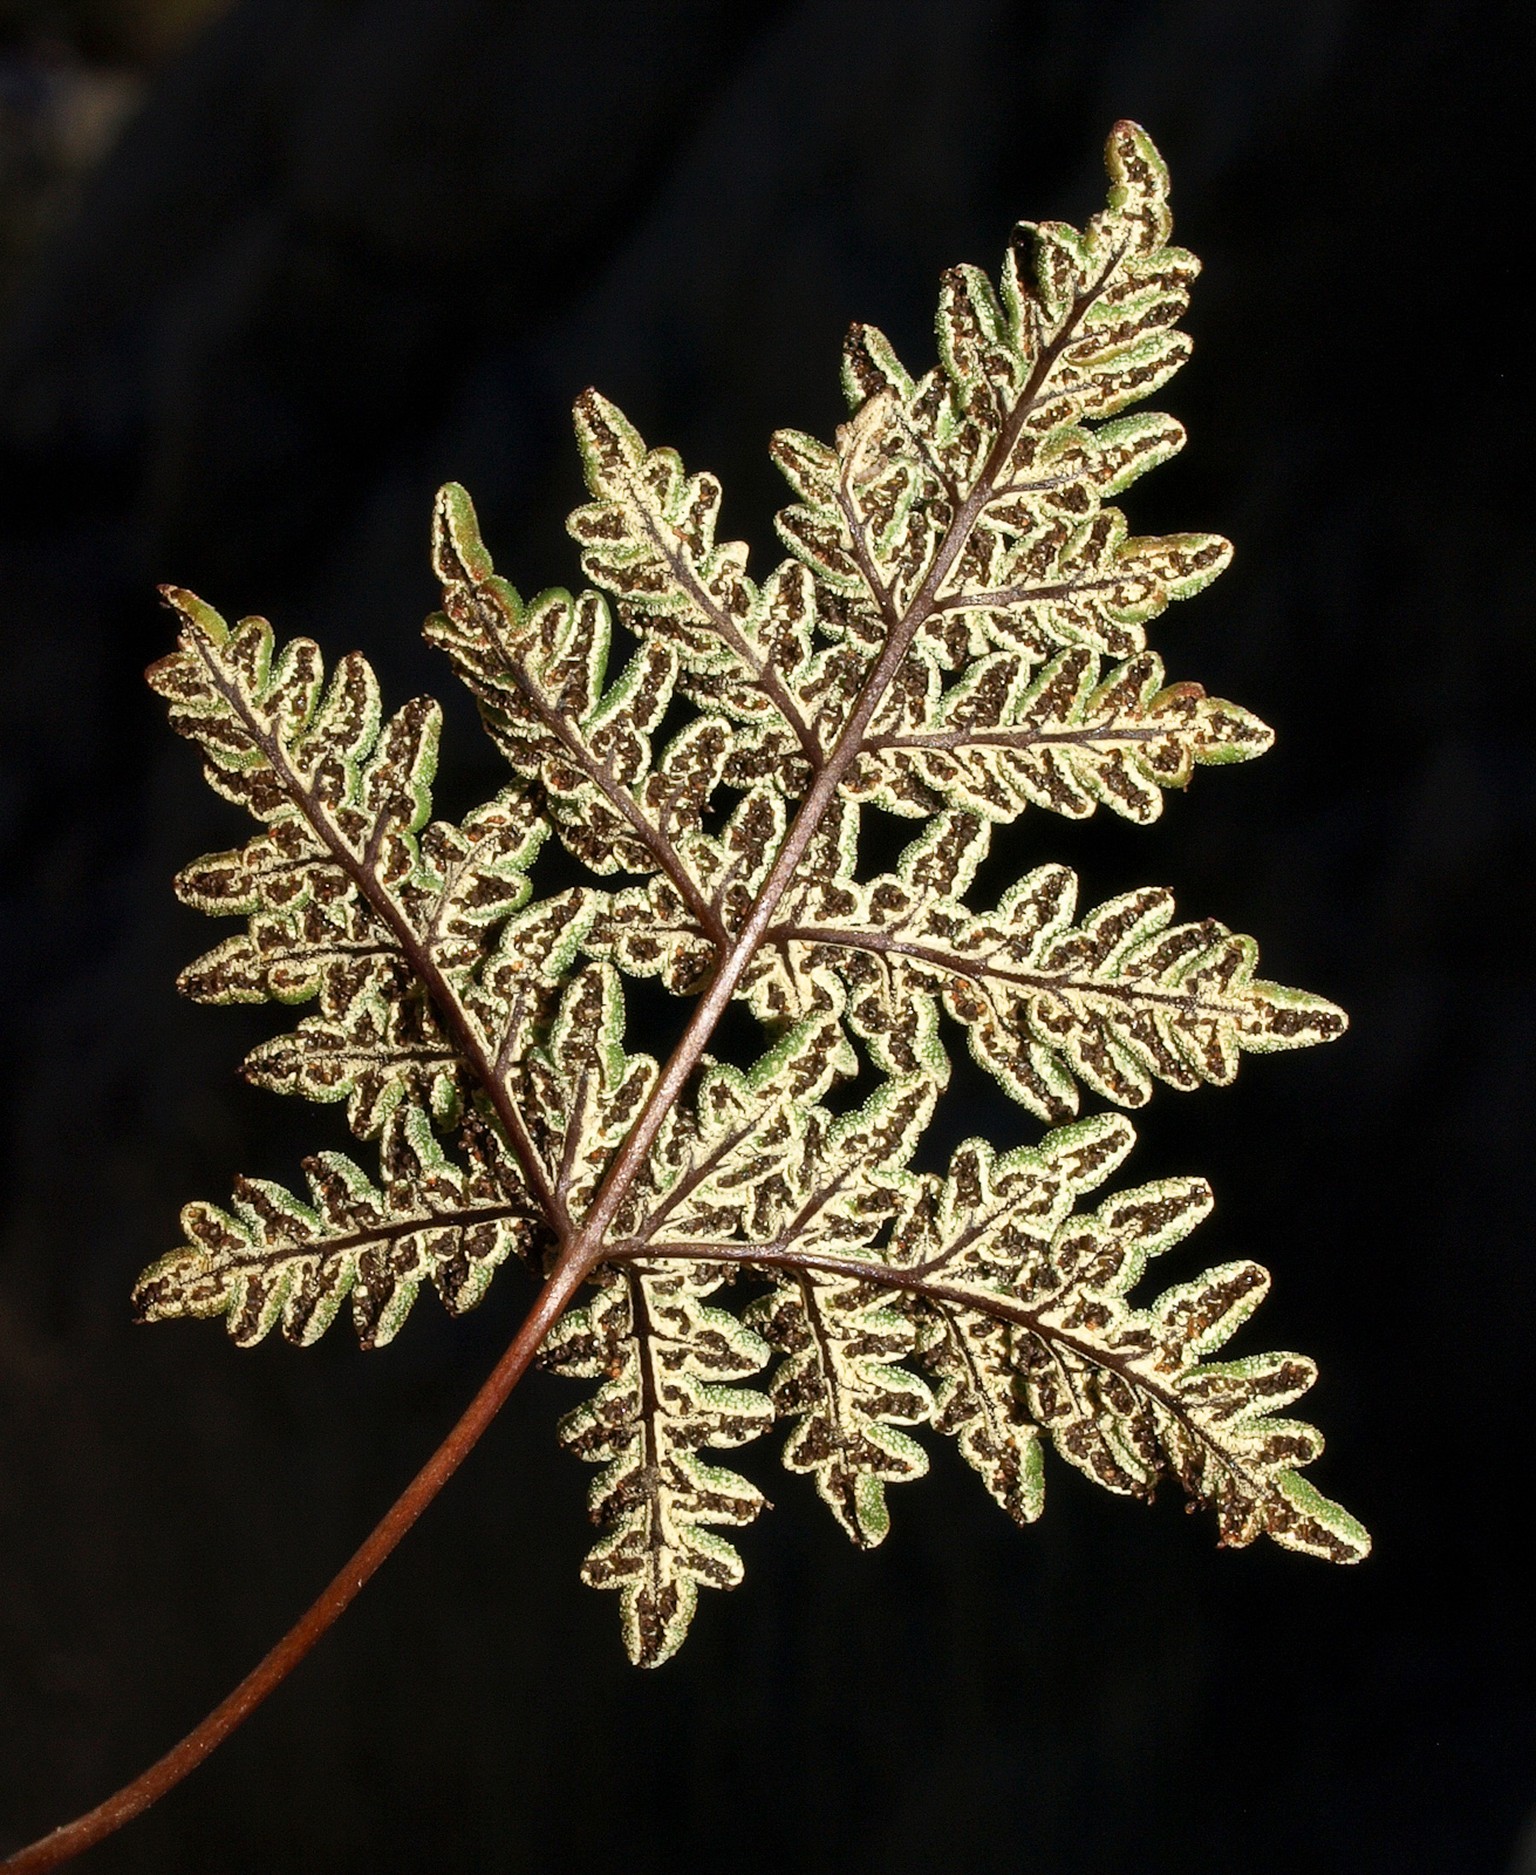 Die Rückseite eines Kalifornische Mantelfarns (Notholaena californica ssp californica). Diese ist für die Fortpflanzung zuständig.&nbsp;